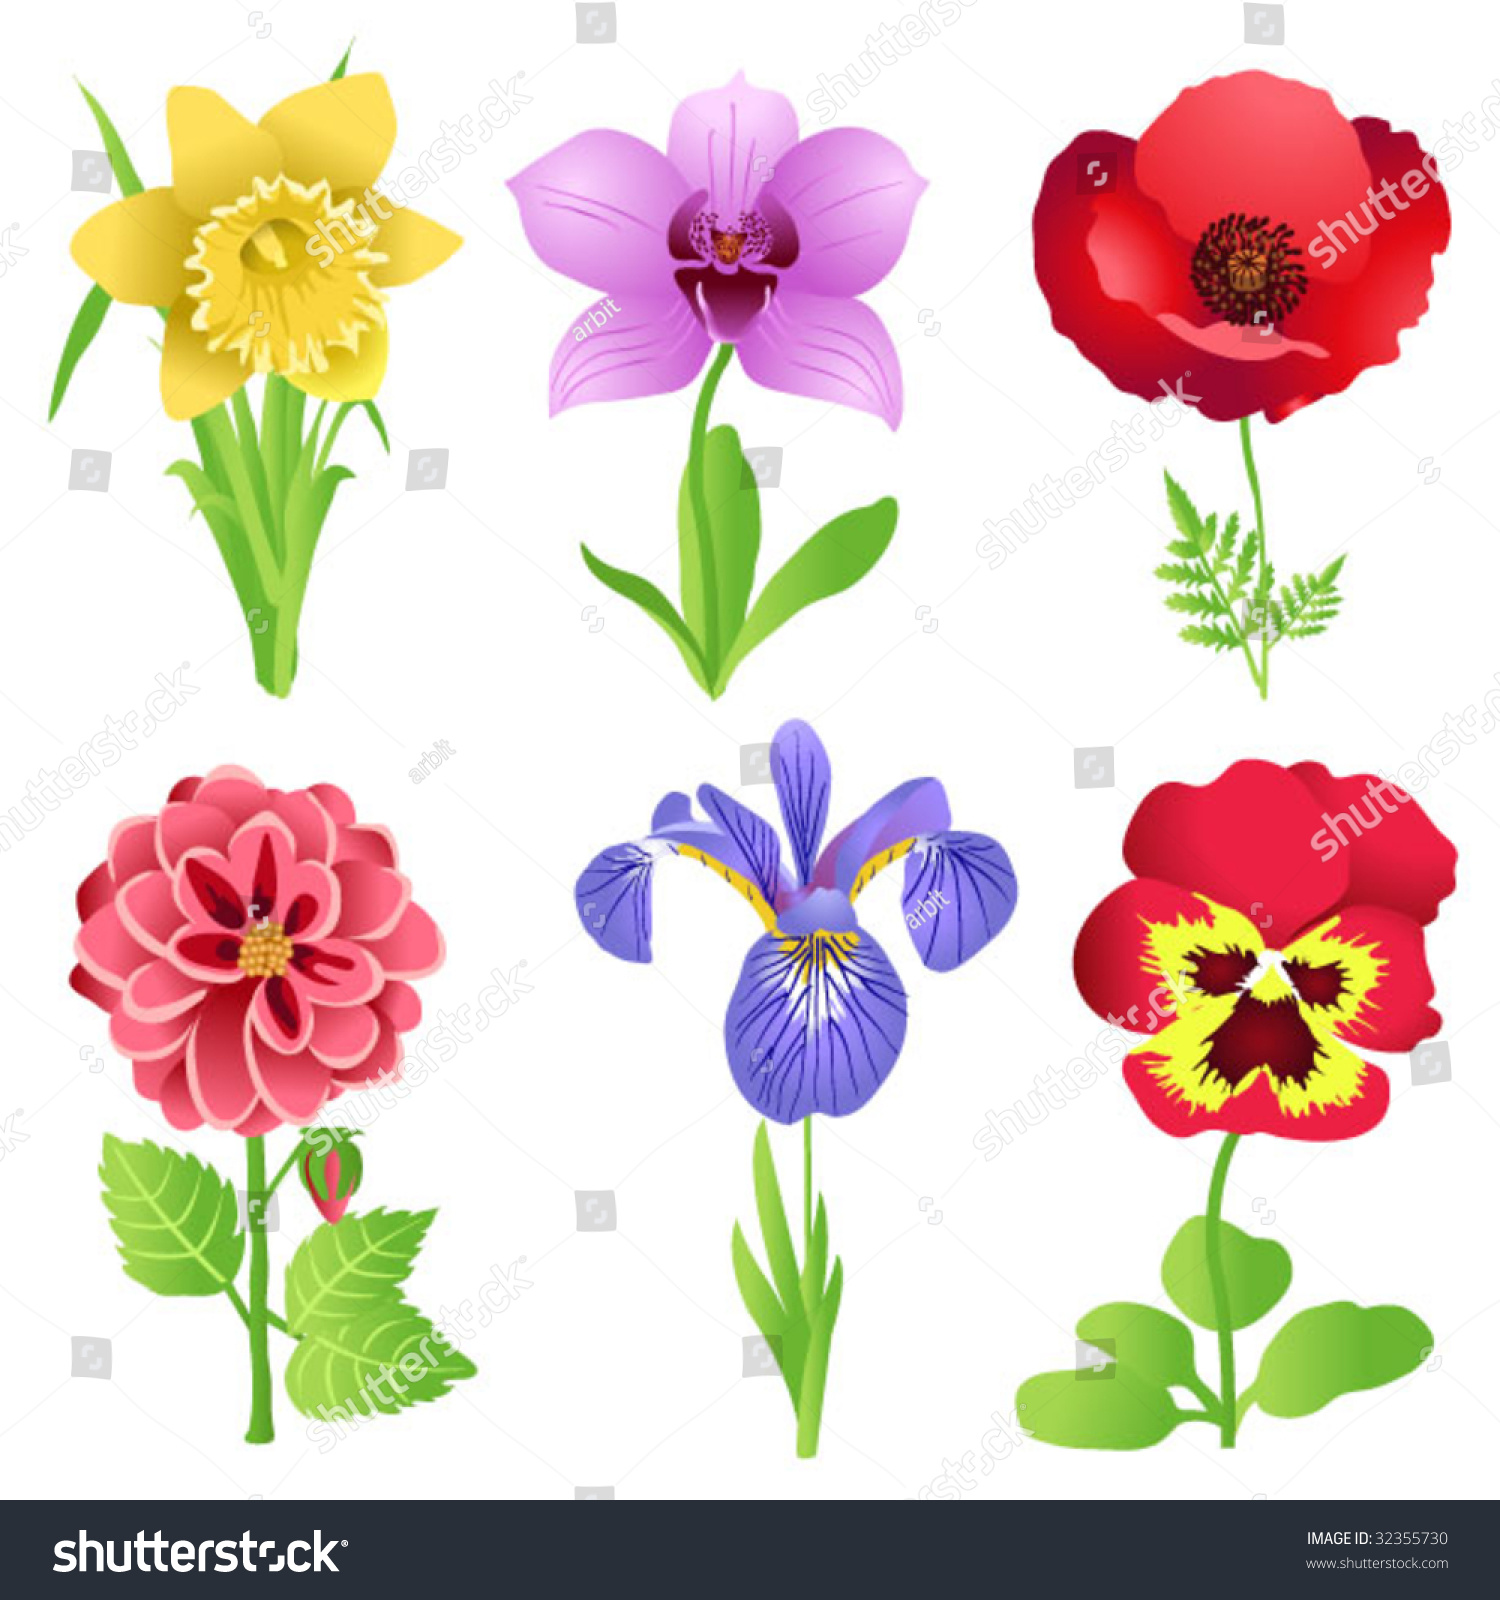 Garden Flowers Stock Vector Illustration 32355730 : Shutterstock